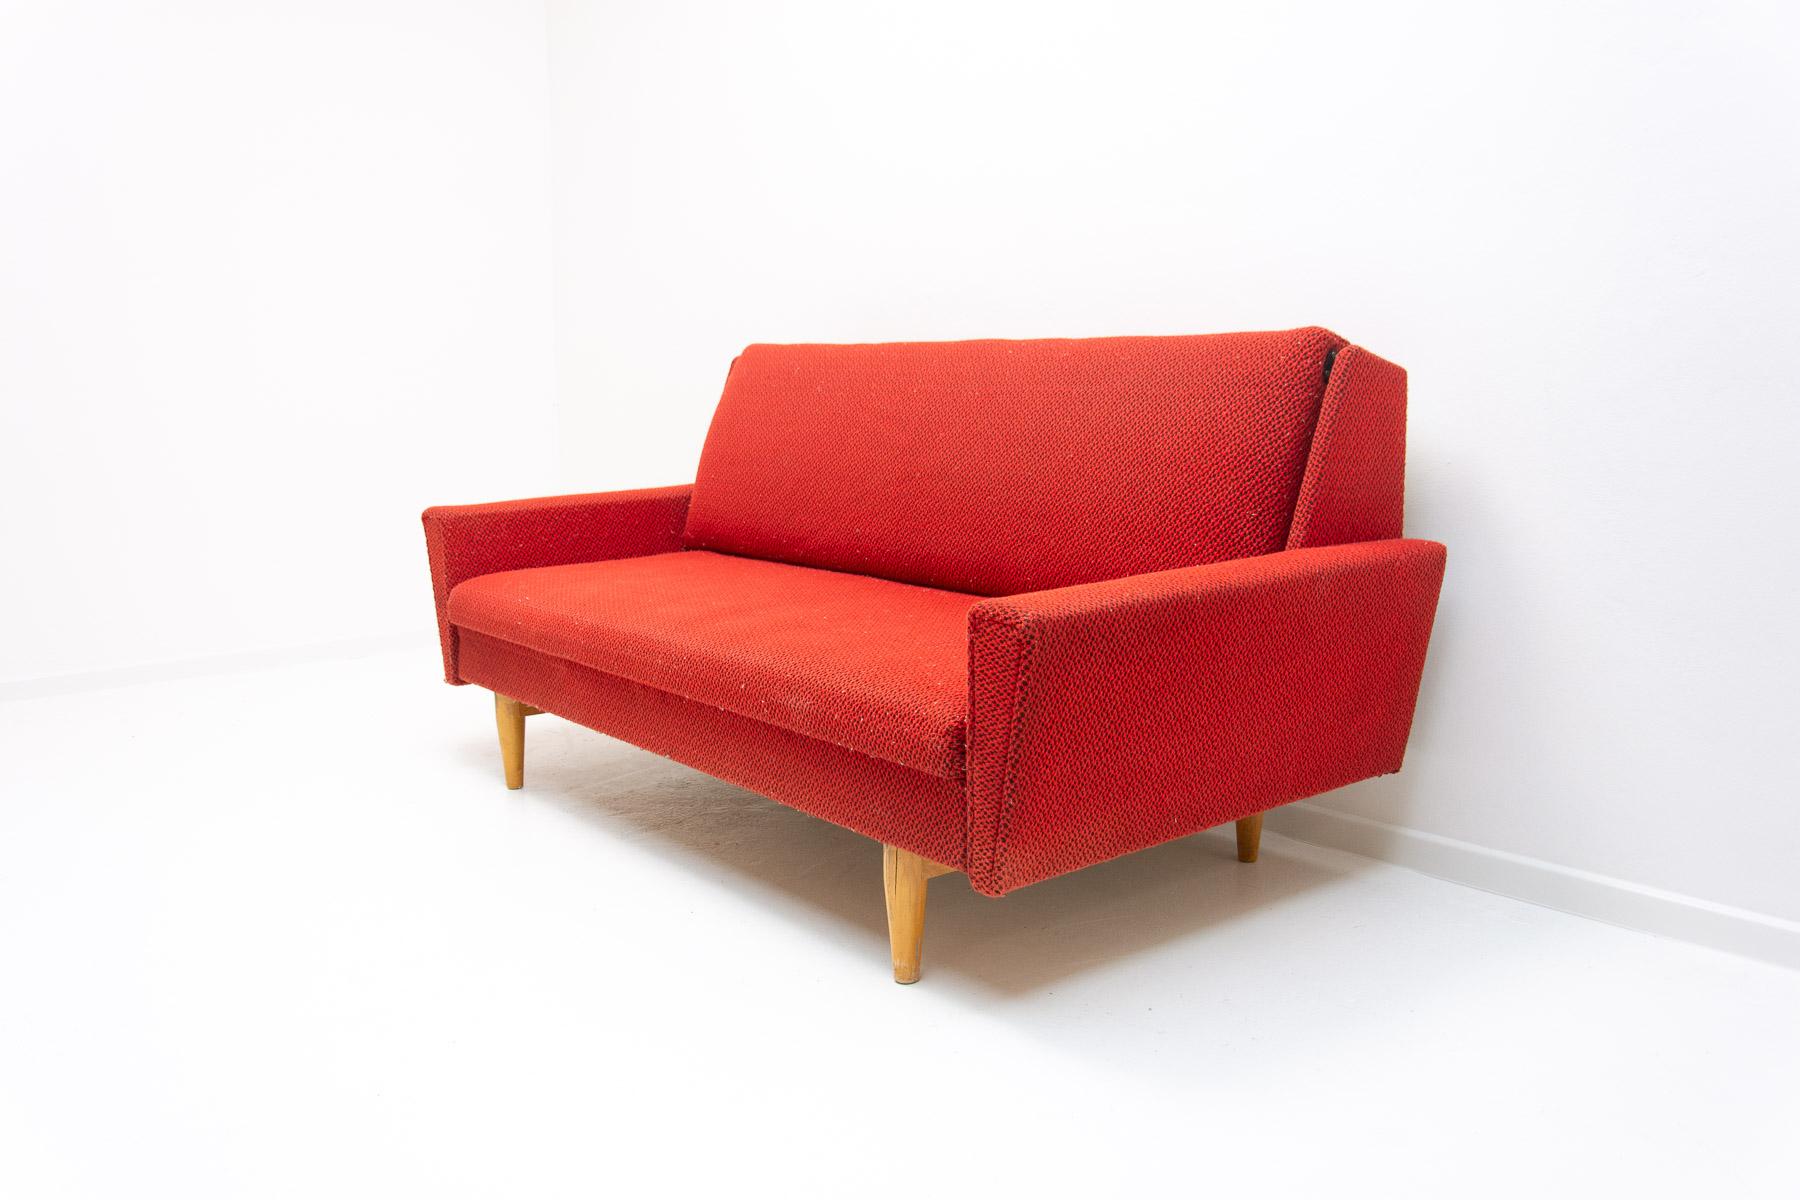 Ce canapé/sofabed du milieu du siècle a été fabriqué dans l'ancienne Tchécoslovaquie dans les années 1960.

Matériau : bois, tissu.

Le canapé est en bon état Vintage By, montrant de légers signes d'âge et d'utilisation.

Hauteur : 78 cm

Longueur :